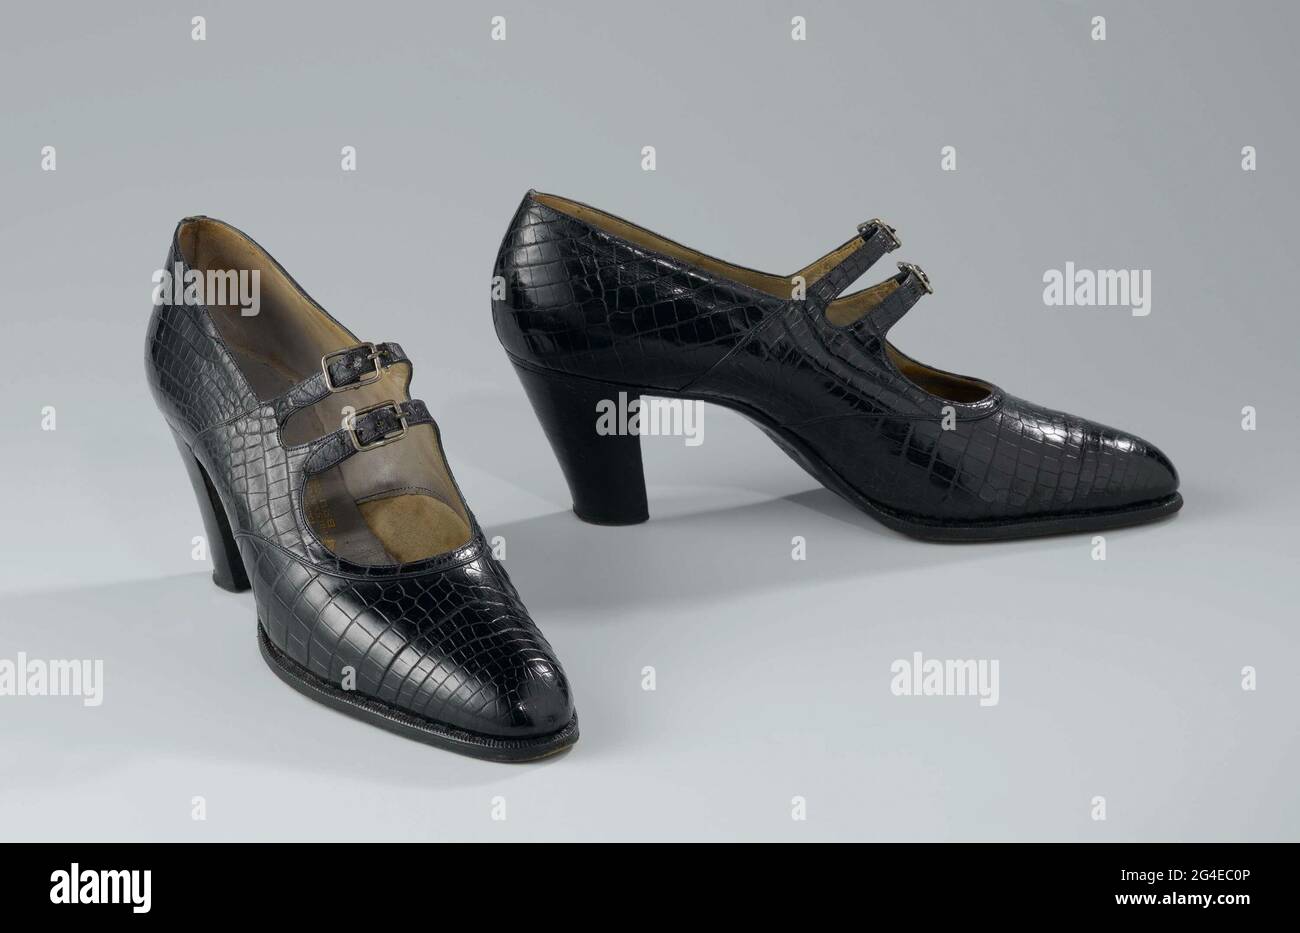 Chaussure droite en cuir crocodile bleu noir avec fermoir et talon haut  découvert. Modèle: La chaussure est composée d'une page de couverture, deux  bâtiments latéraux avec deux ceintures et boucles métalliques